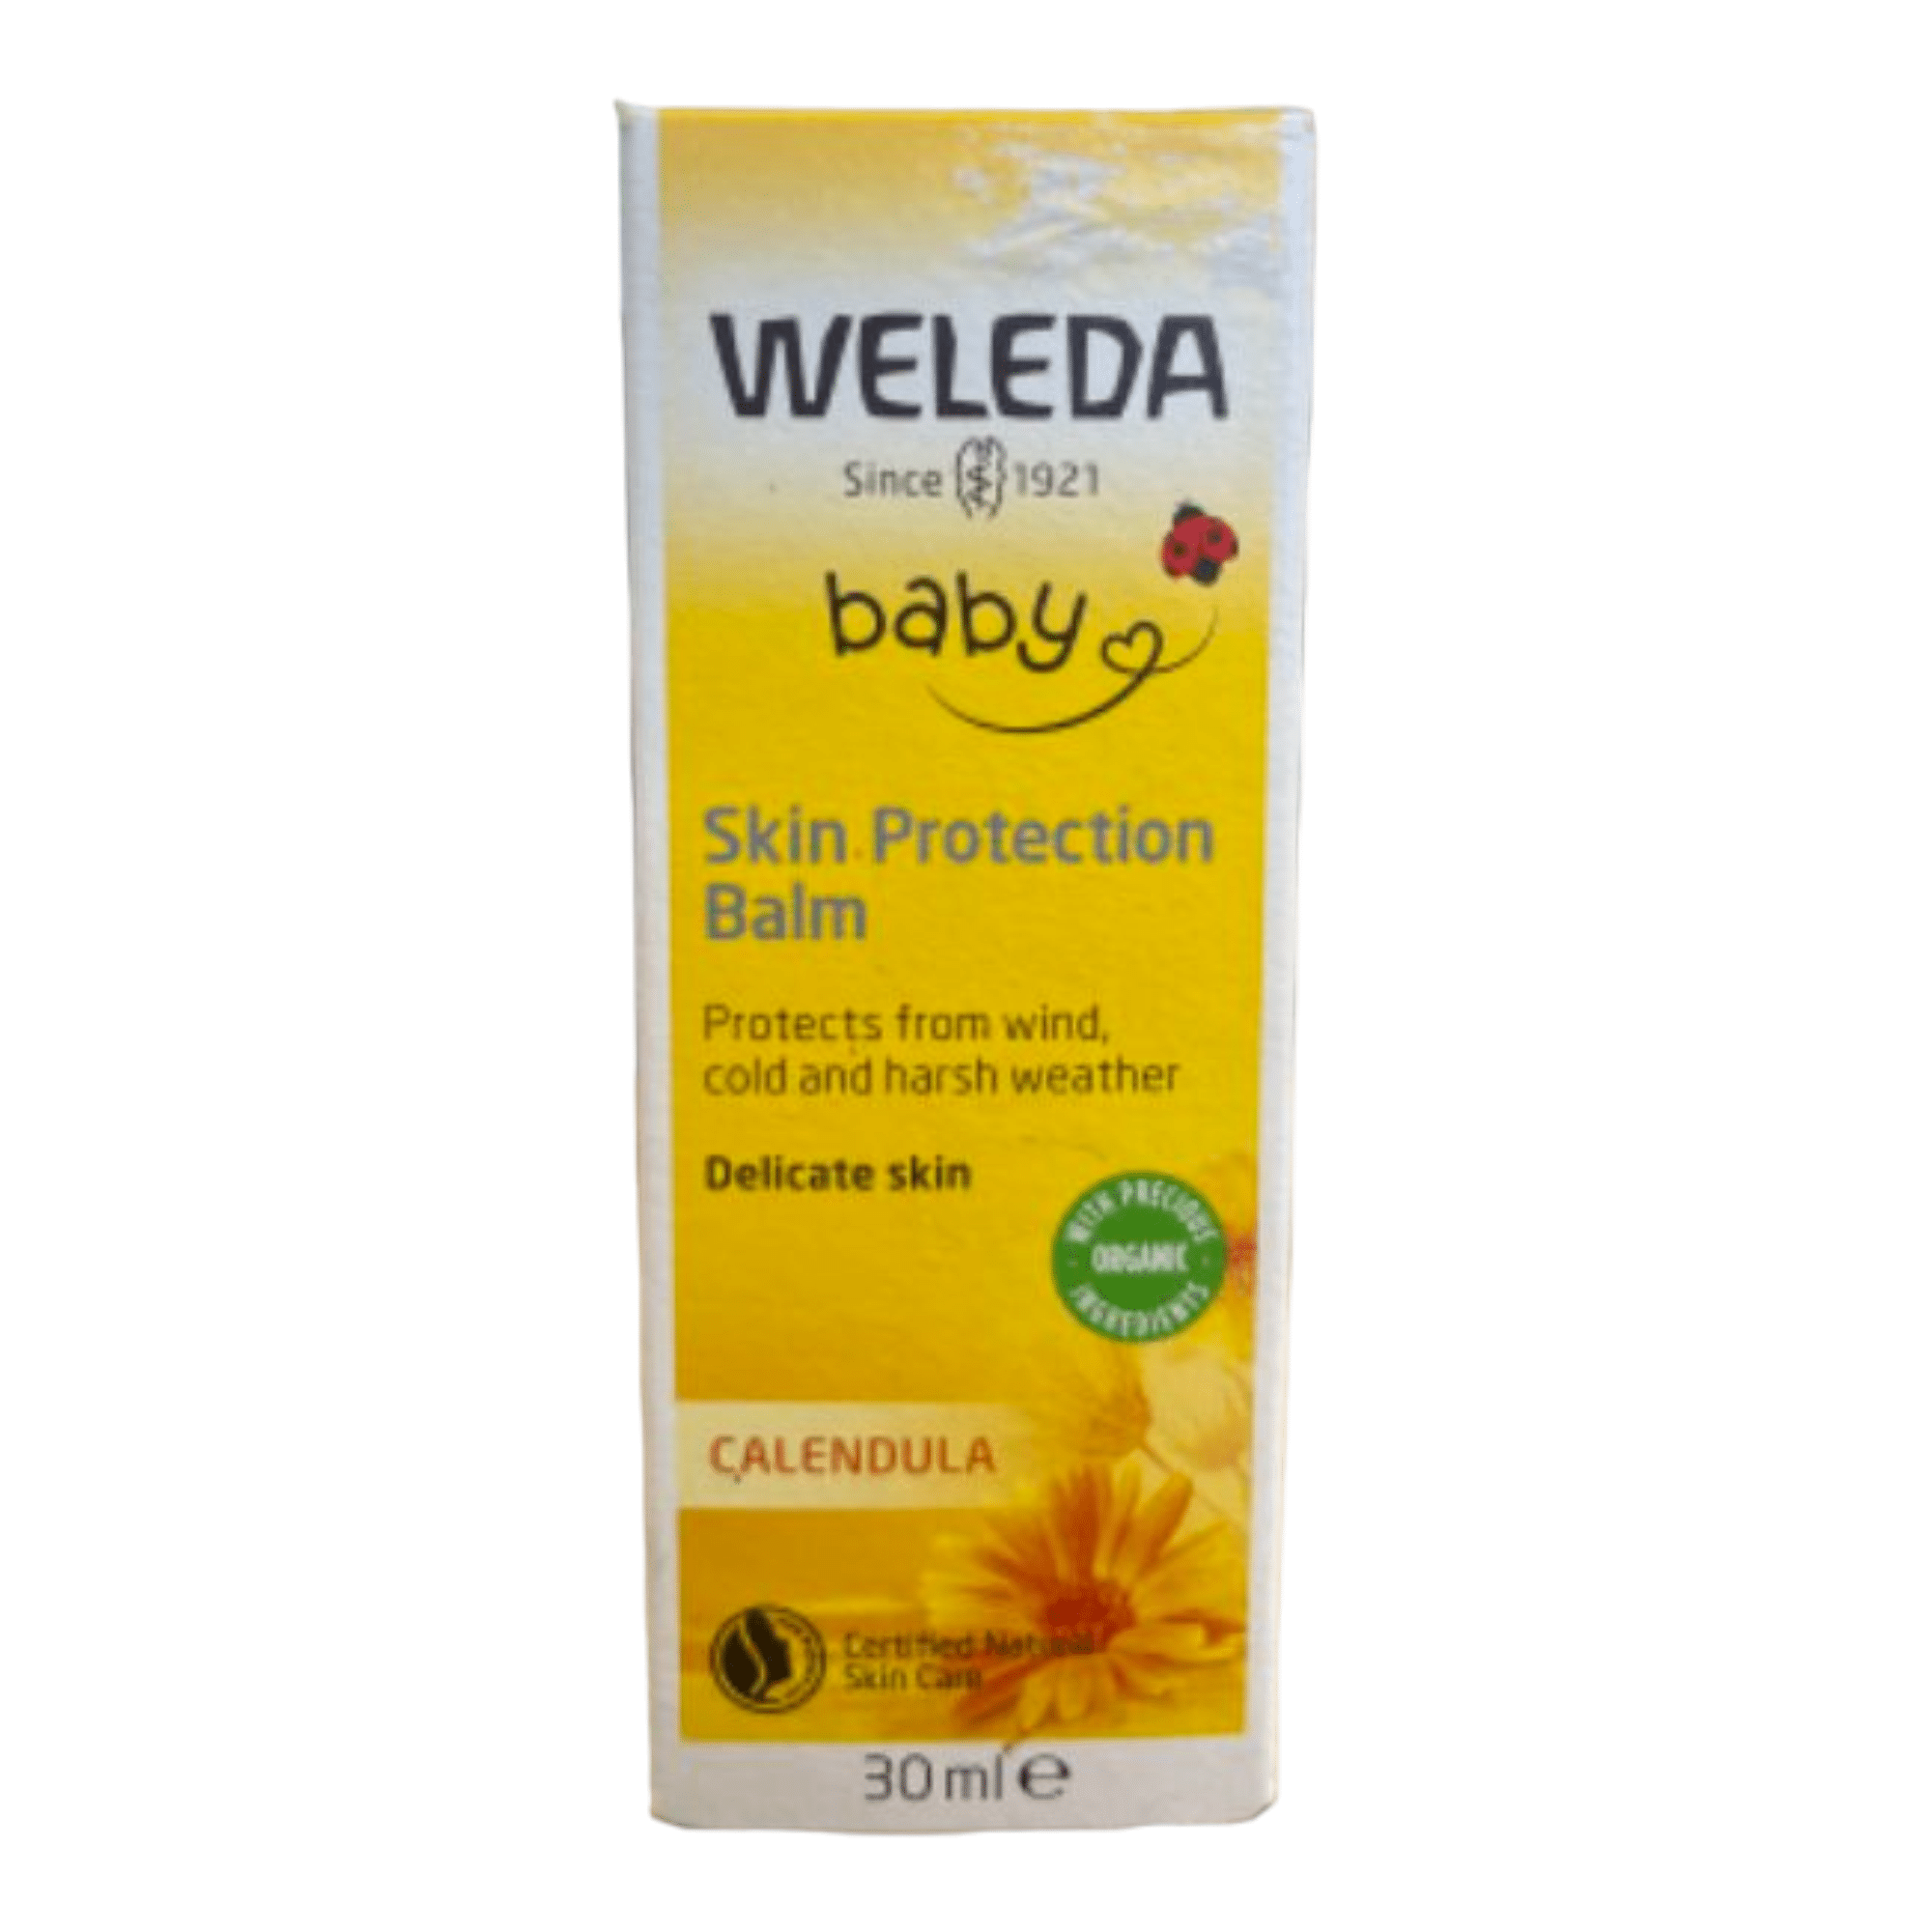 וולדה בייבי – קרם קלנדולה לחורף הזנה והגנה אינטנסיבית לעור הפנים